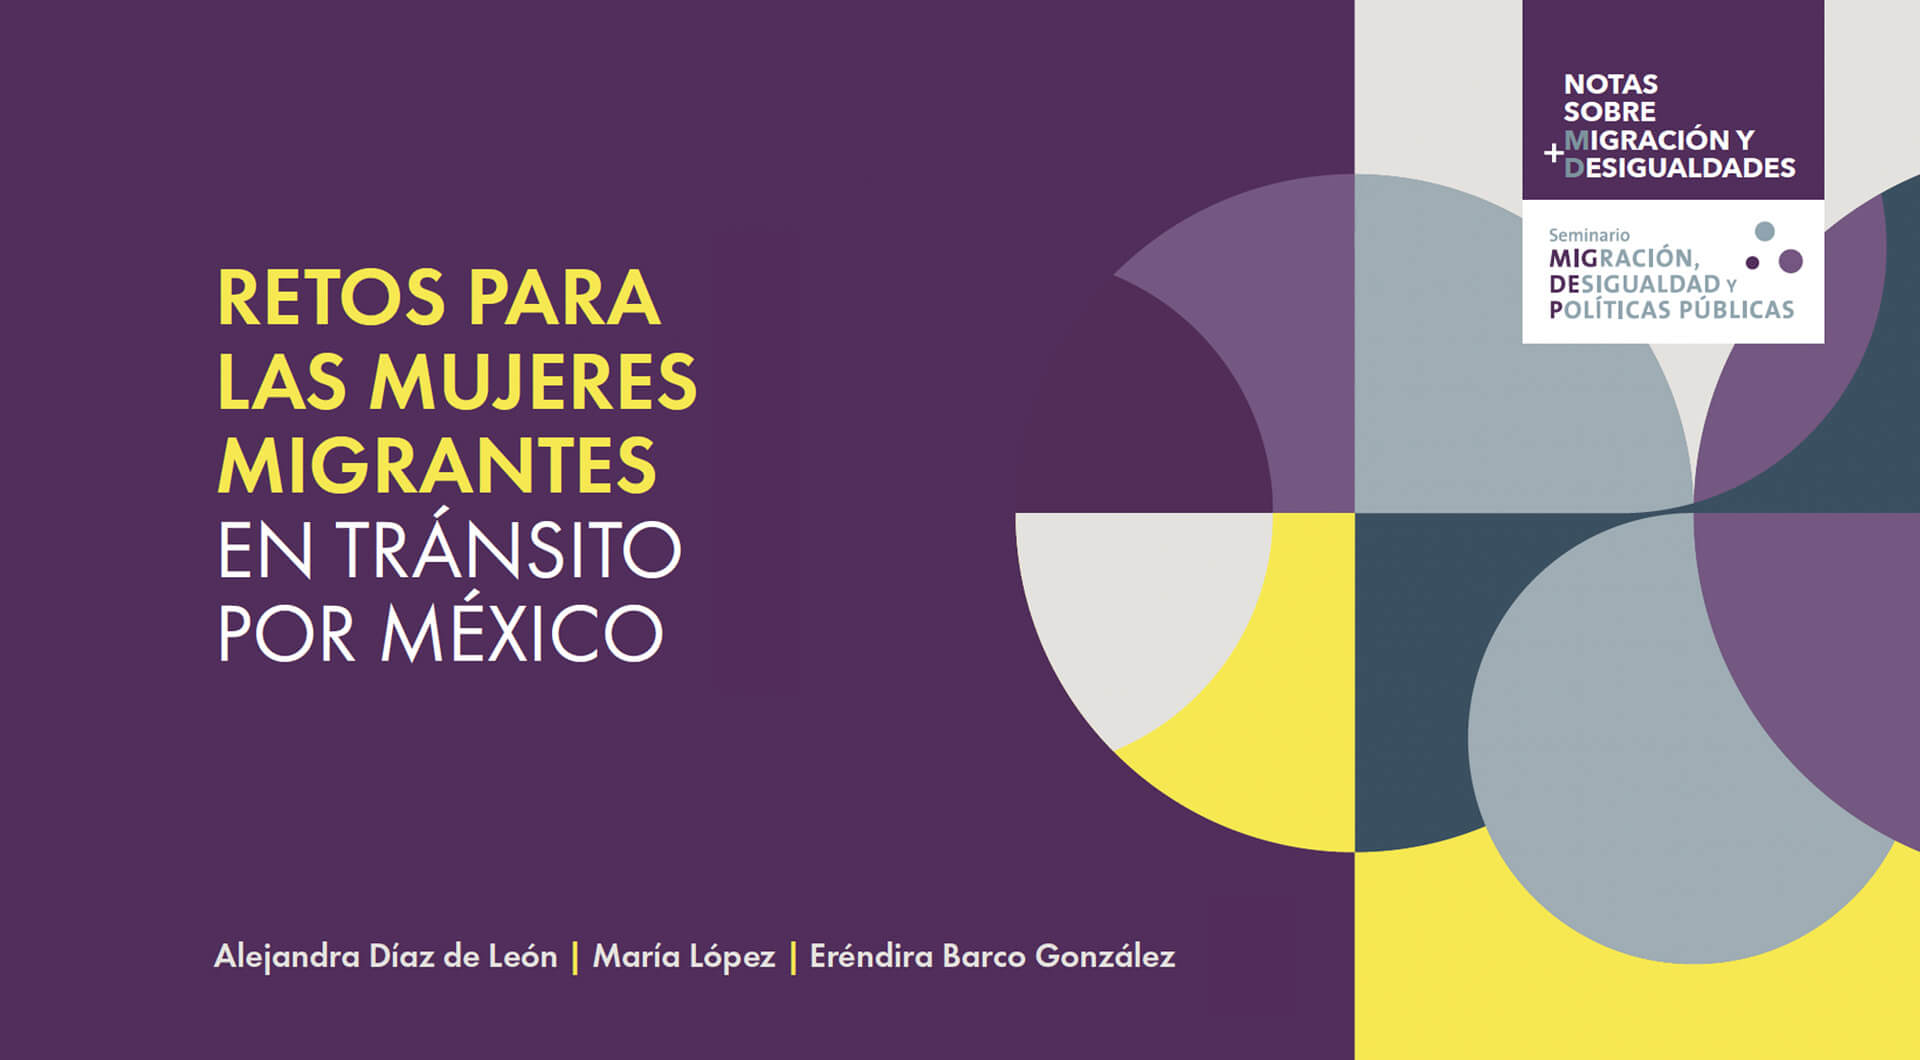 Mejores condiciones y mayores posibilidades para las poblaciones desplazadas, en México